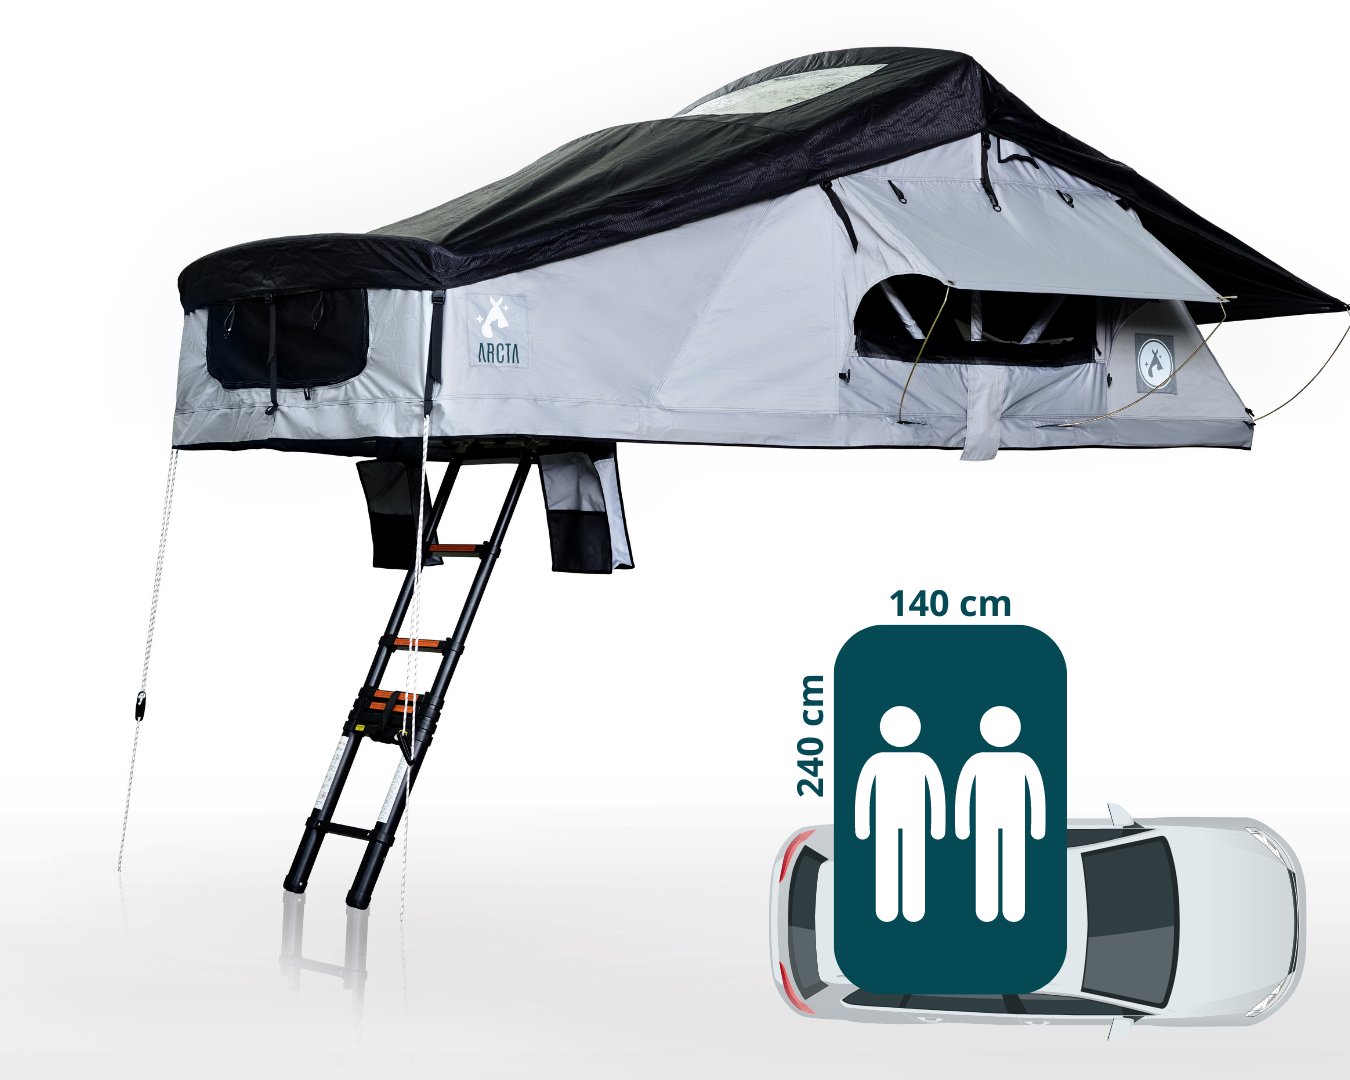 VIATOR 140 Dachzelt mit Leiter und Abmessungen für 2 Personen auf Autodach - ARCTA